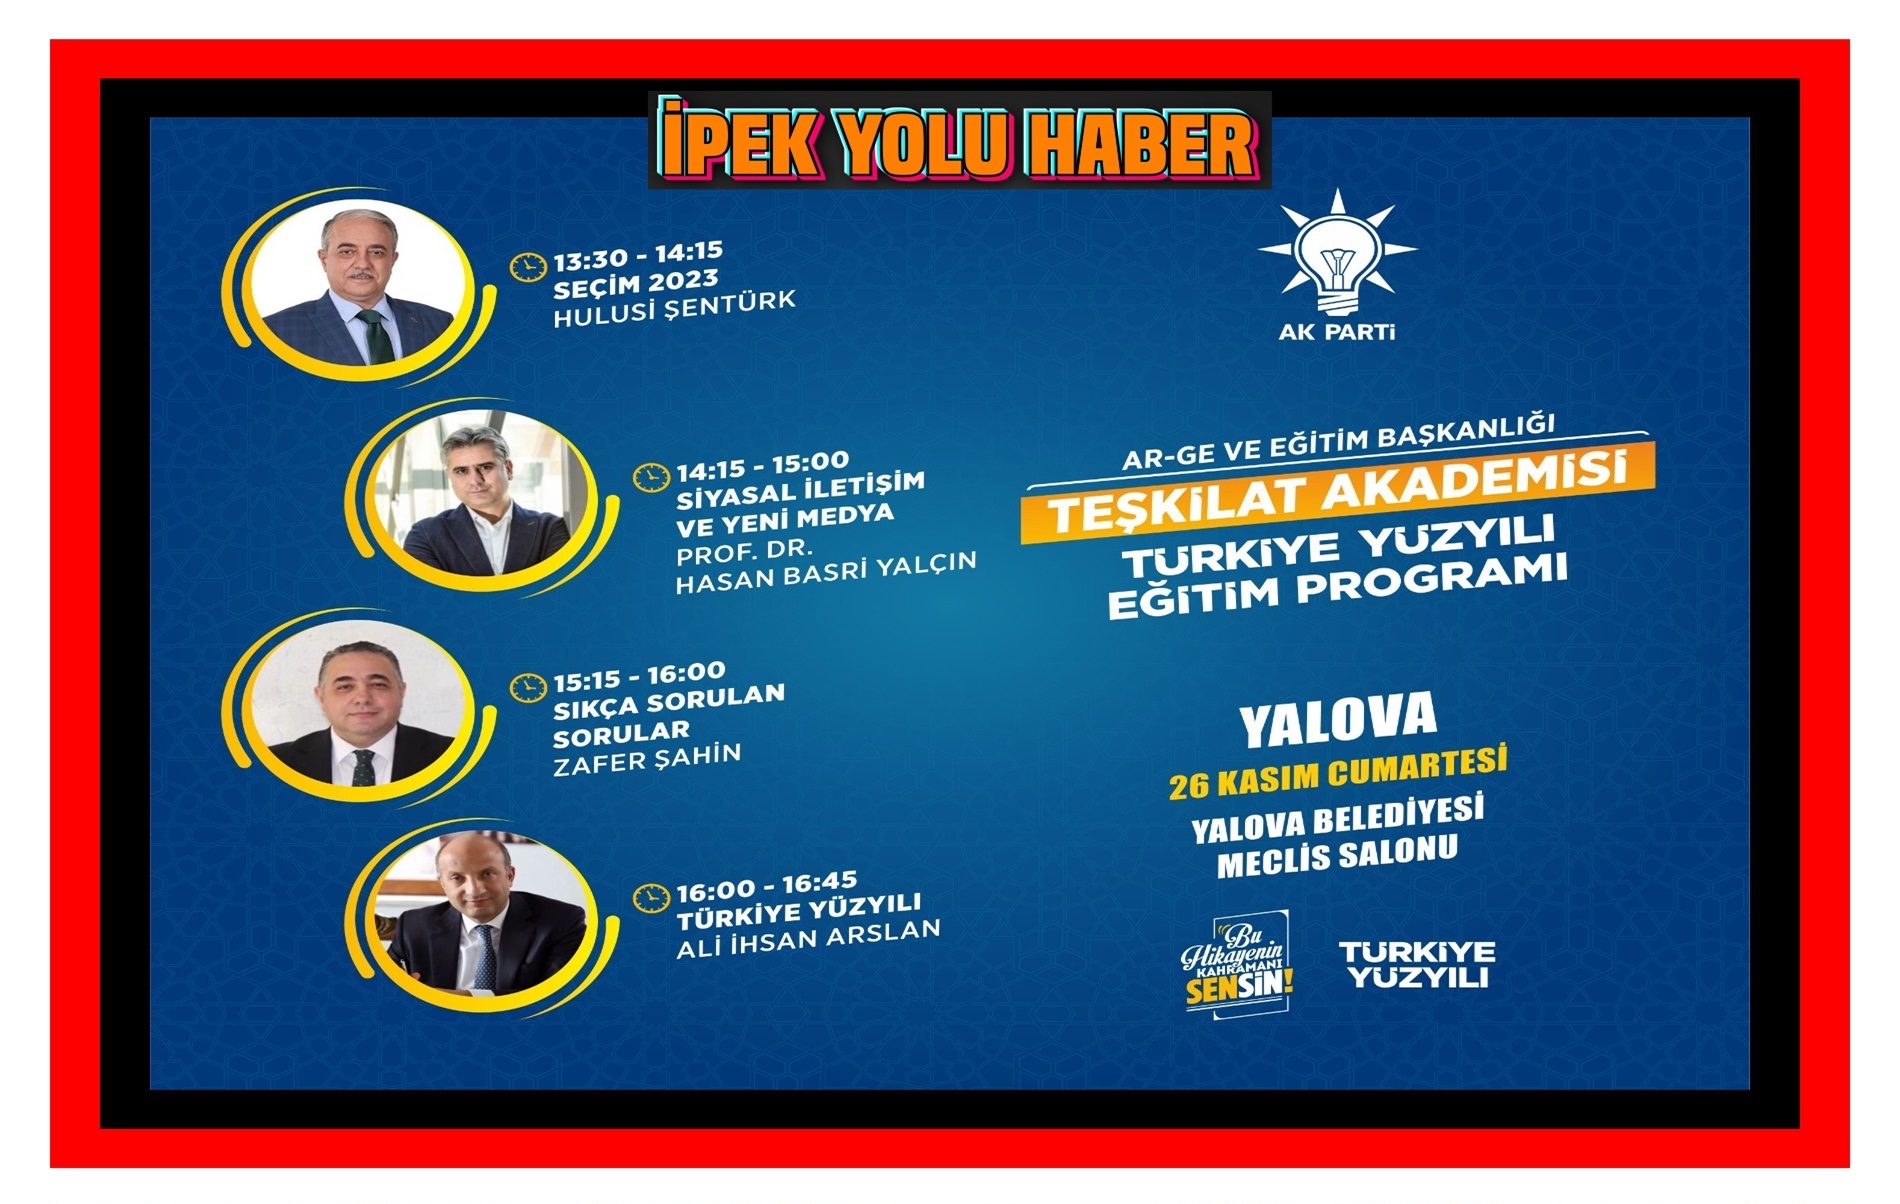 AK Parti’de Teşkilat Akademisi “Türkiye Yüzyılı” Eğitim Programı